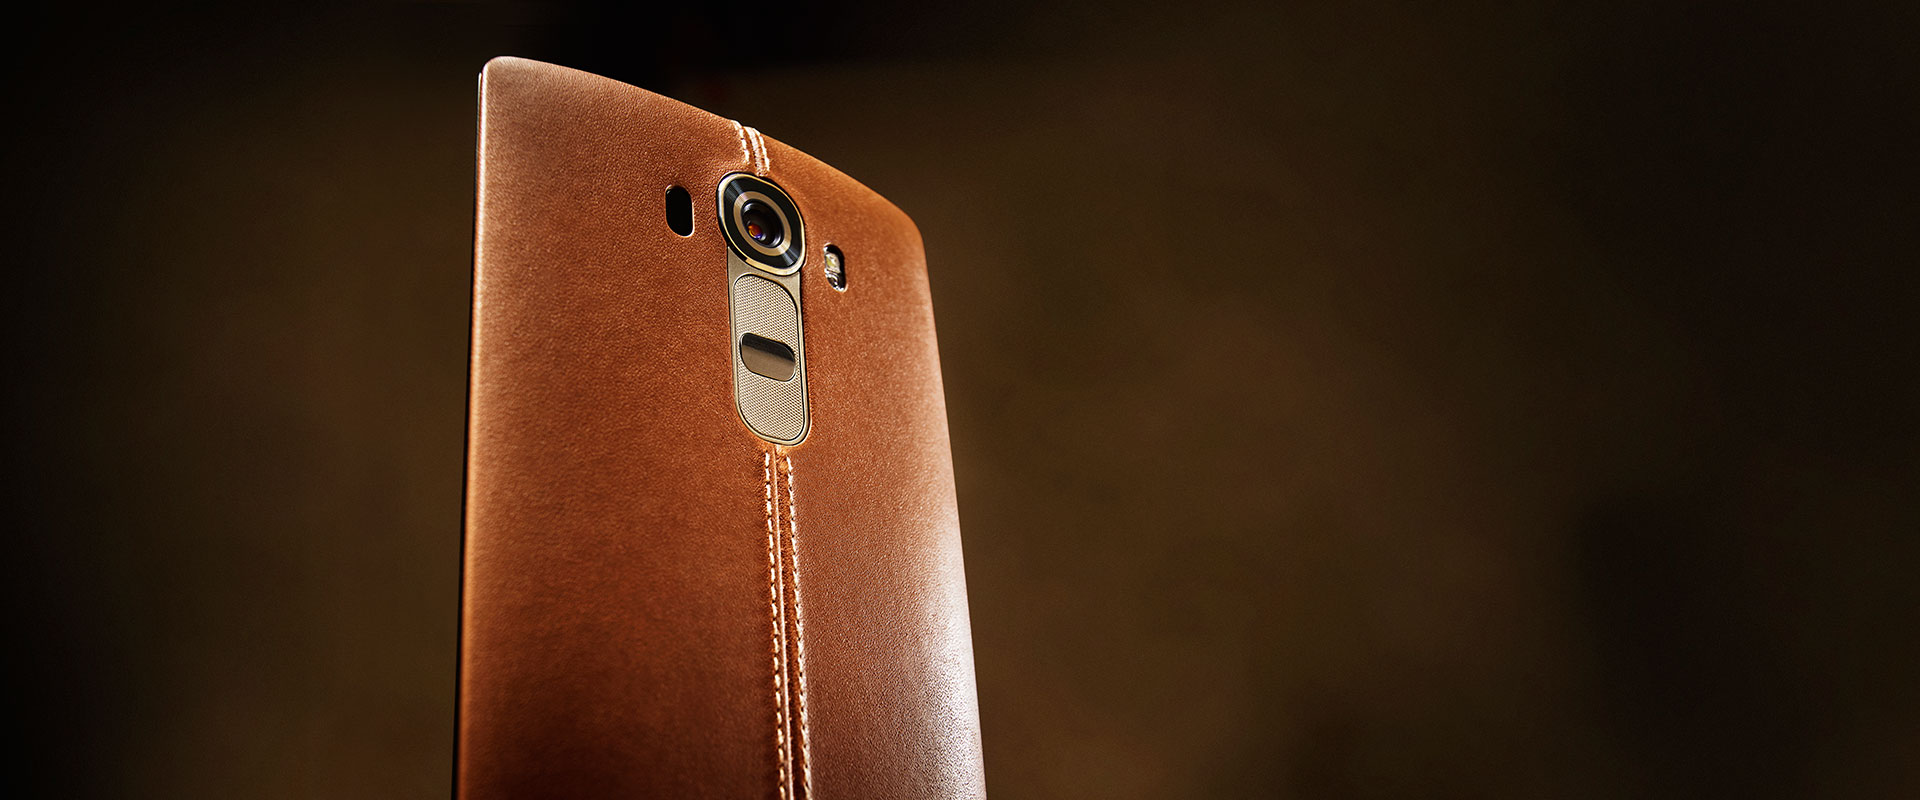 LG G4: tudo sobre o novo smartphone top de linha da LG